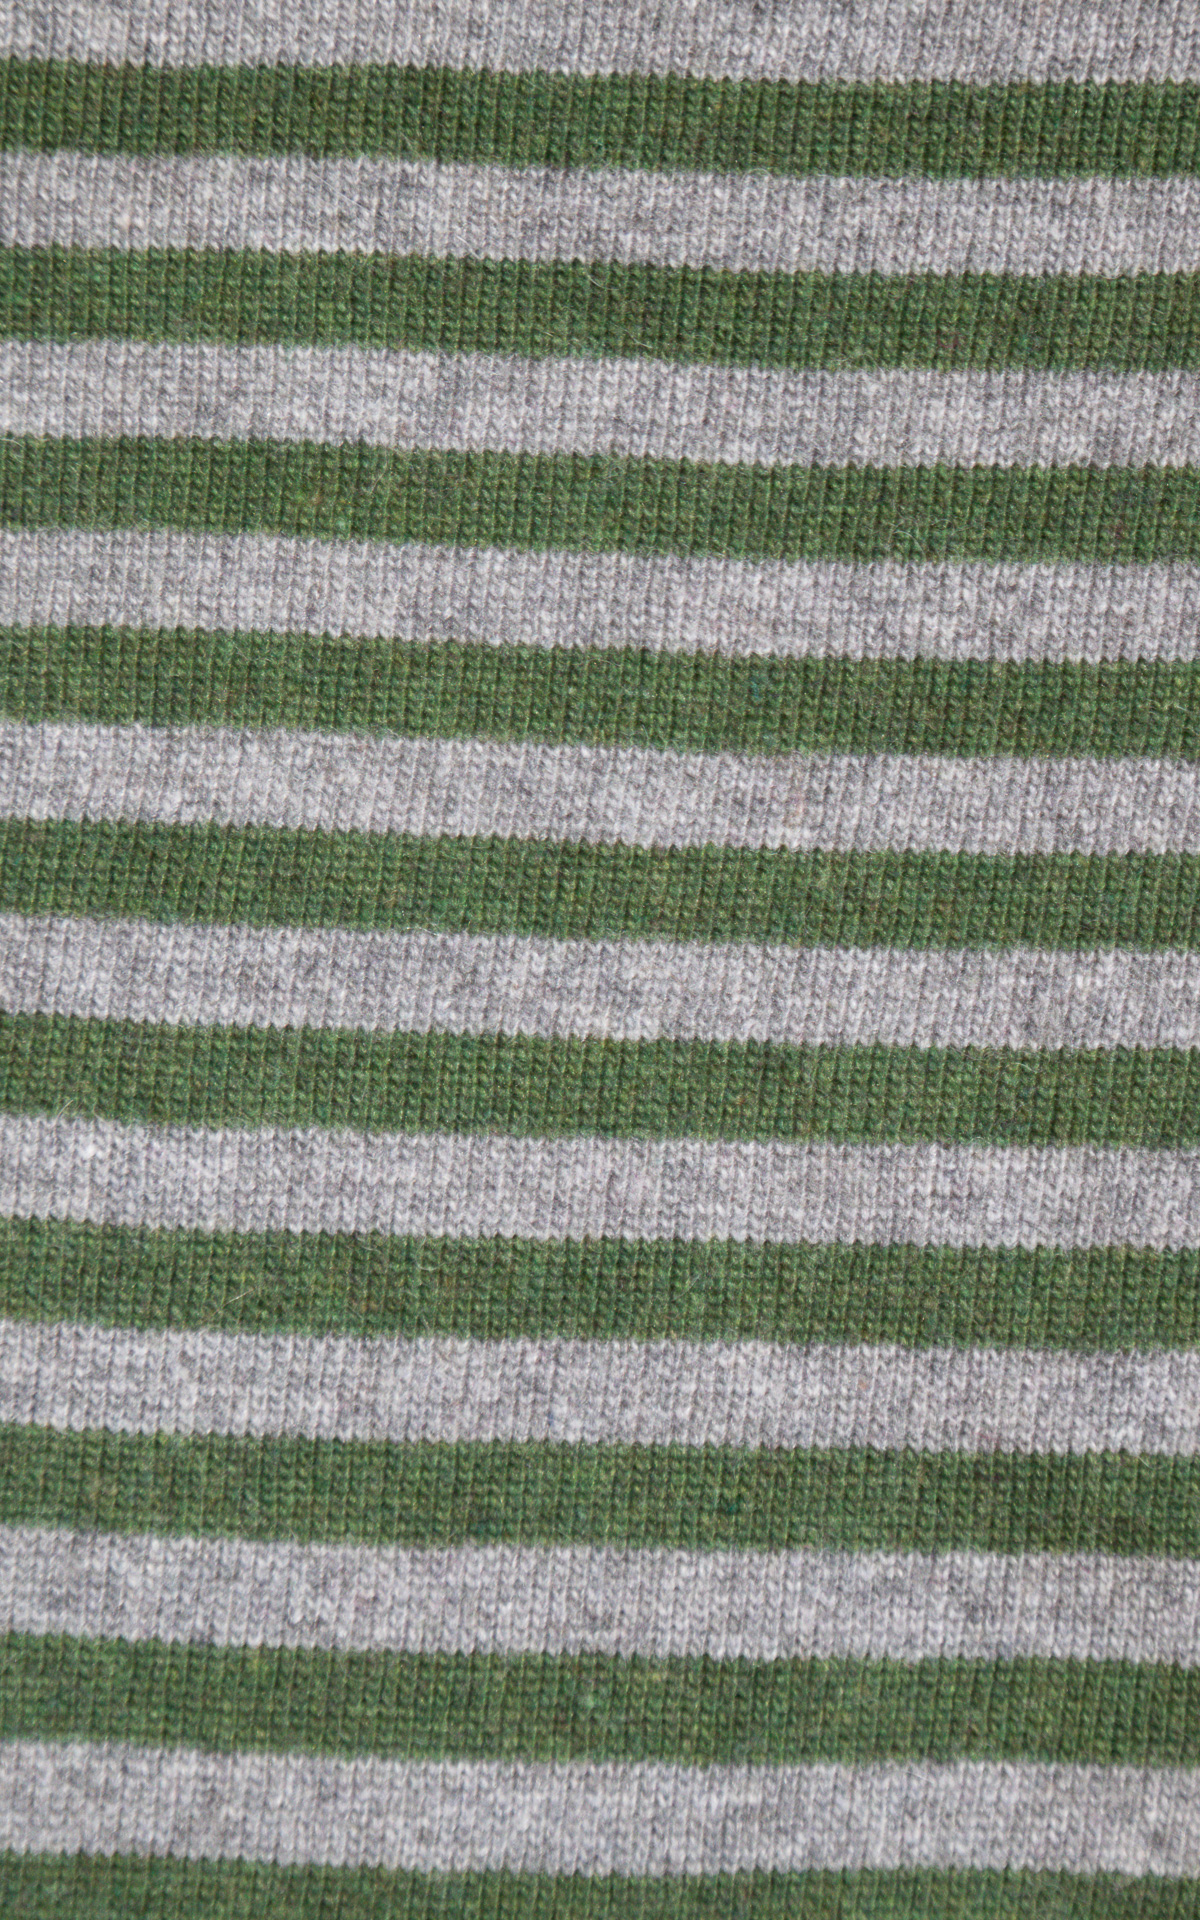 Off-On - maglia bicolore righe - grigio/verde